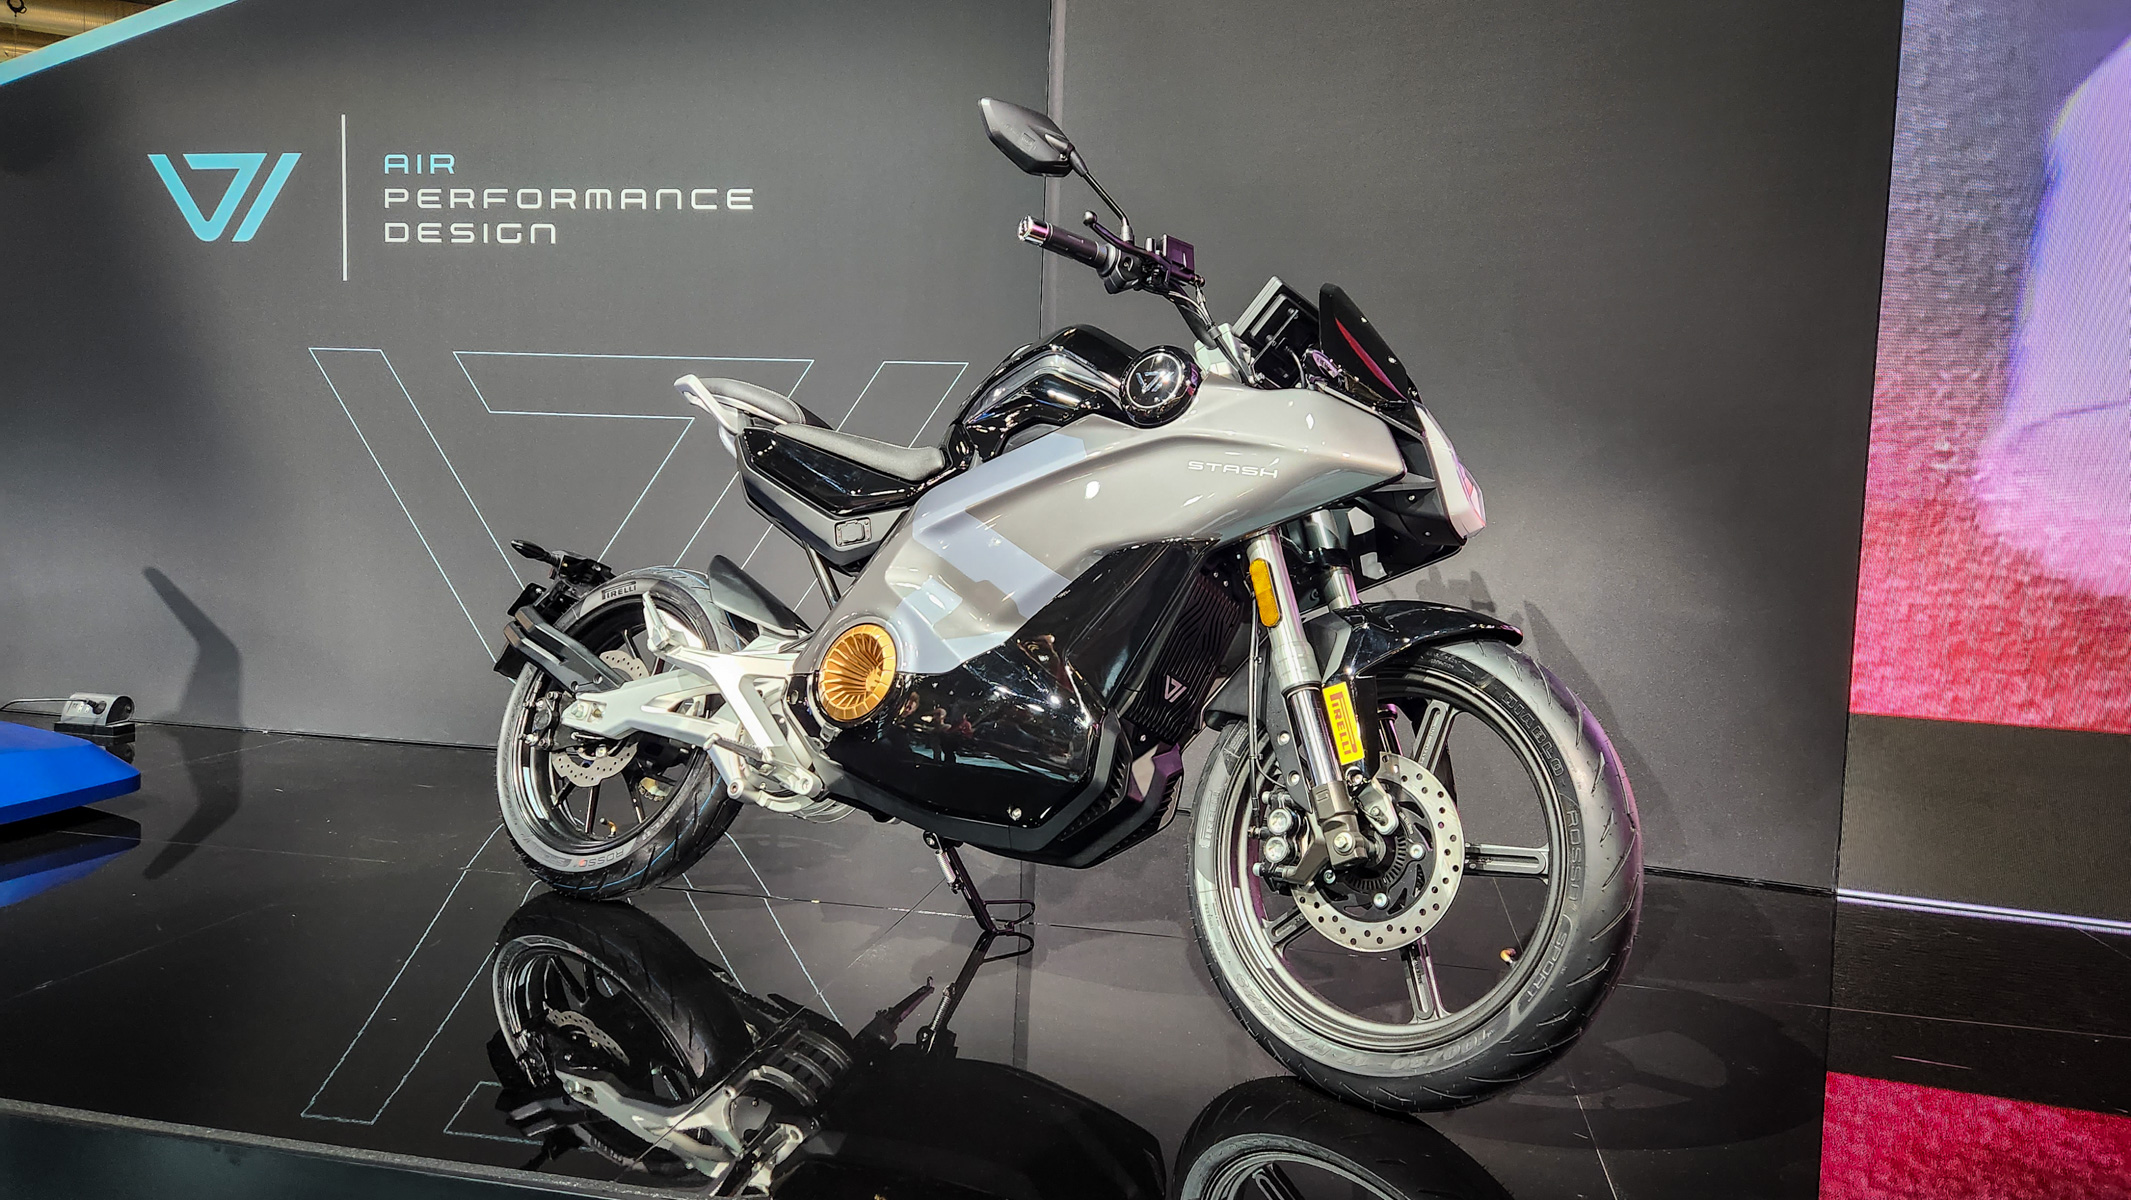 موتور سیکلت الکتریکی: یک استاش Vmoto در نهایت قدرتمندتر و سریعتر از حد انتظار